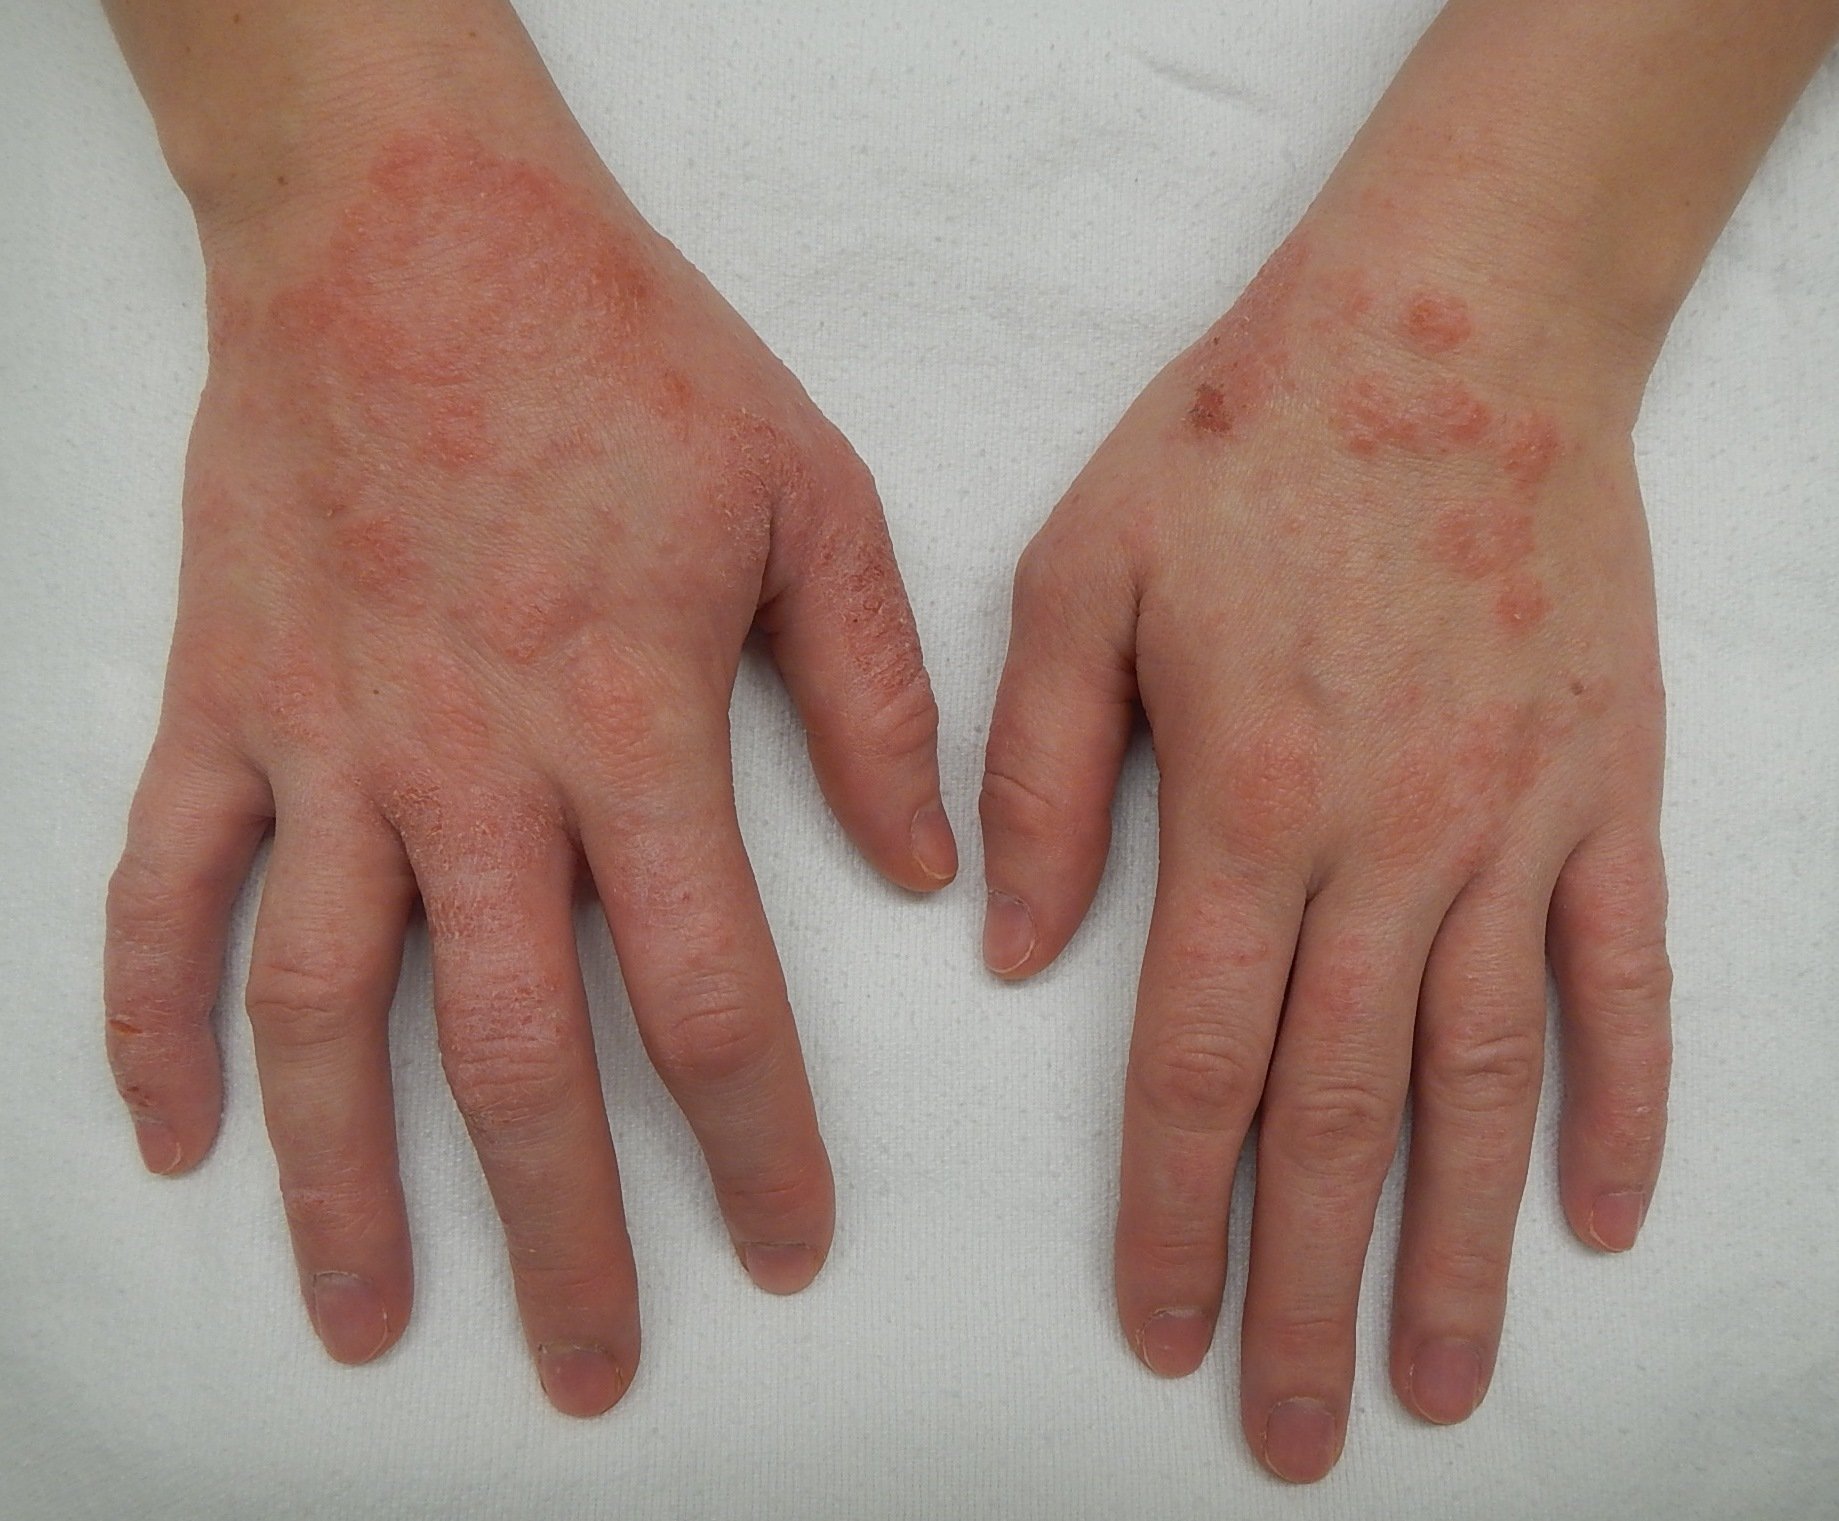  Mai multe boli de piele din cauza stresului provocat de pandemie. Câteva semne importante